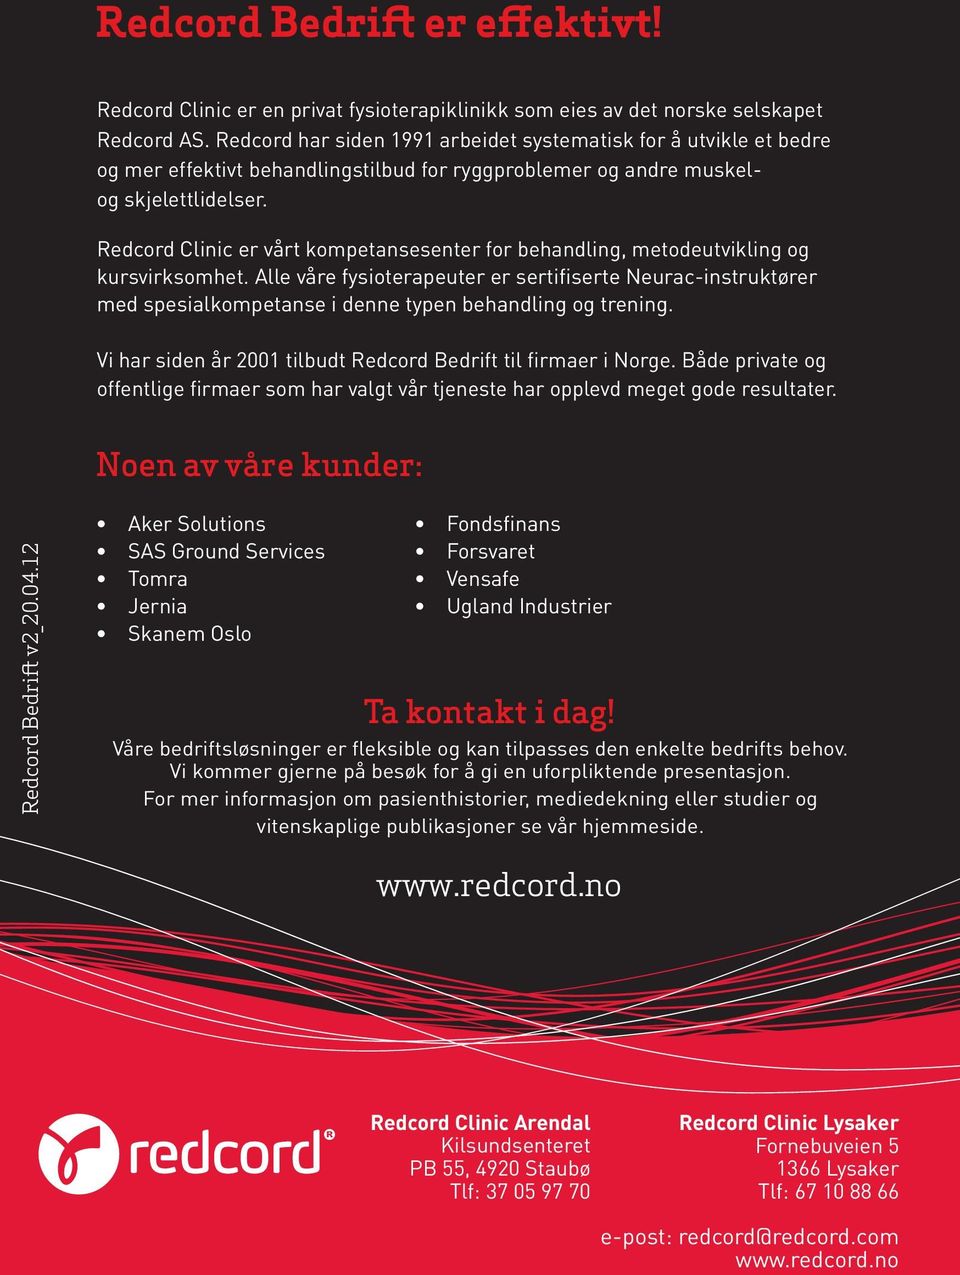 Redcord Clinic er vårt kompetansesenter for behandling, metodeutvikling og kursvirksomhet.